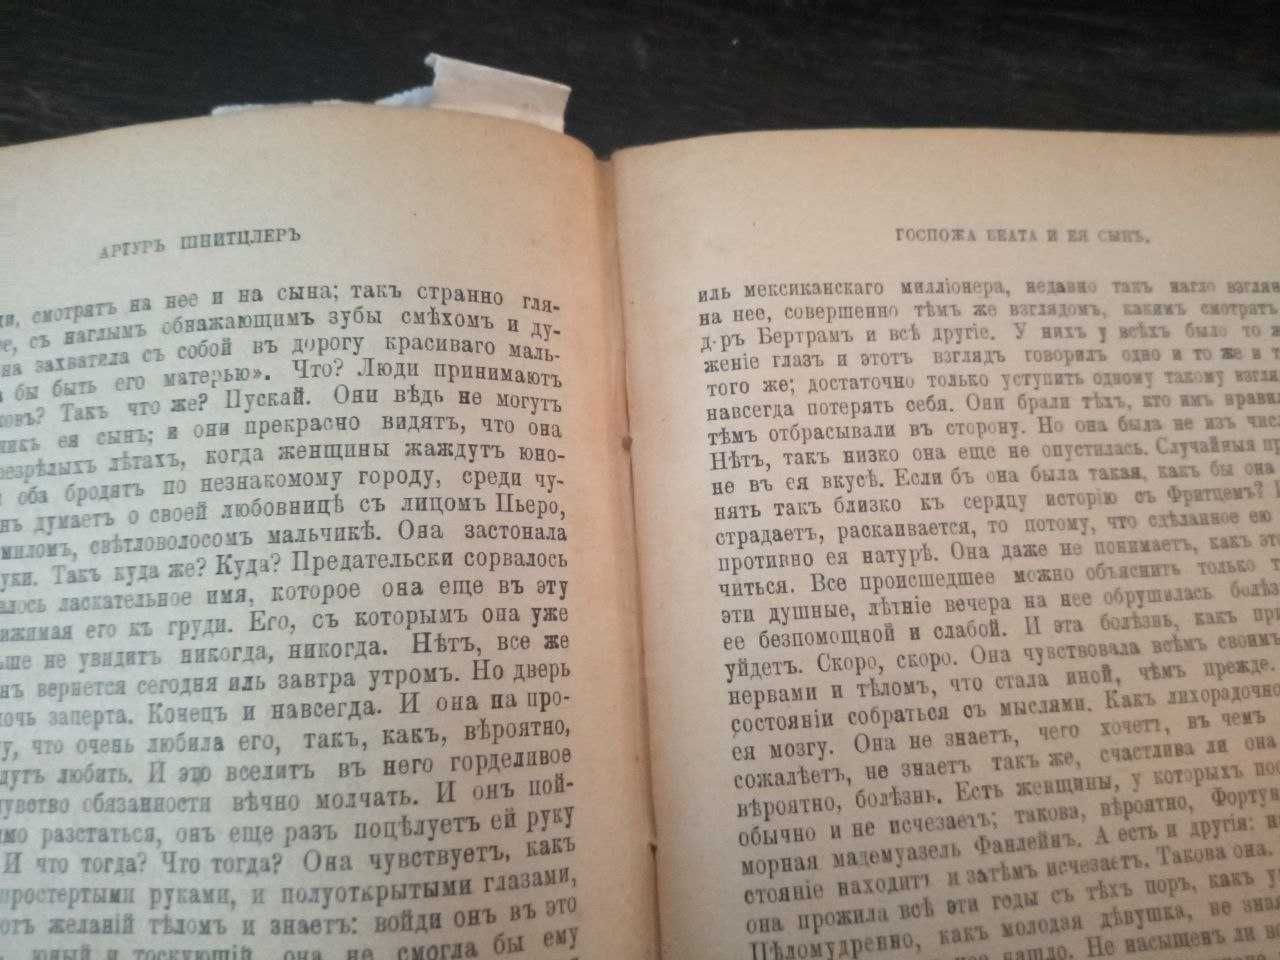 Знаменитая испанская повесть "Лазарь поводырь" в переводе. 1913 г.